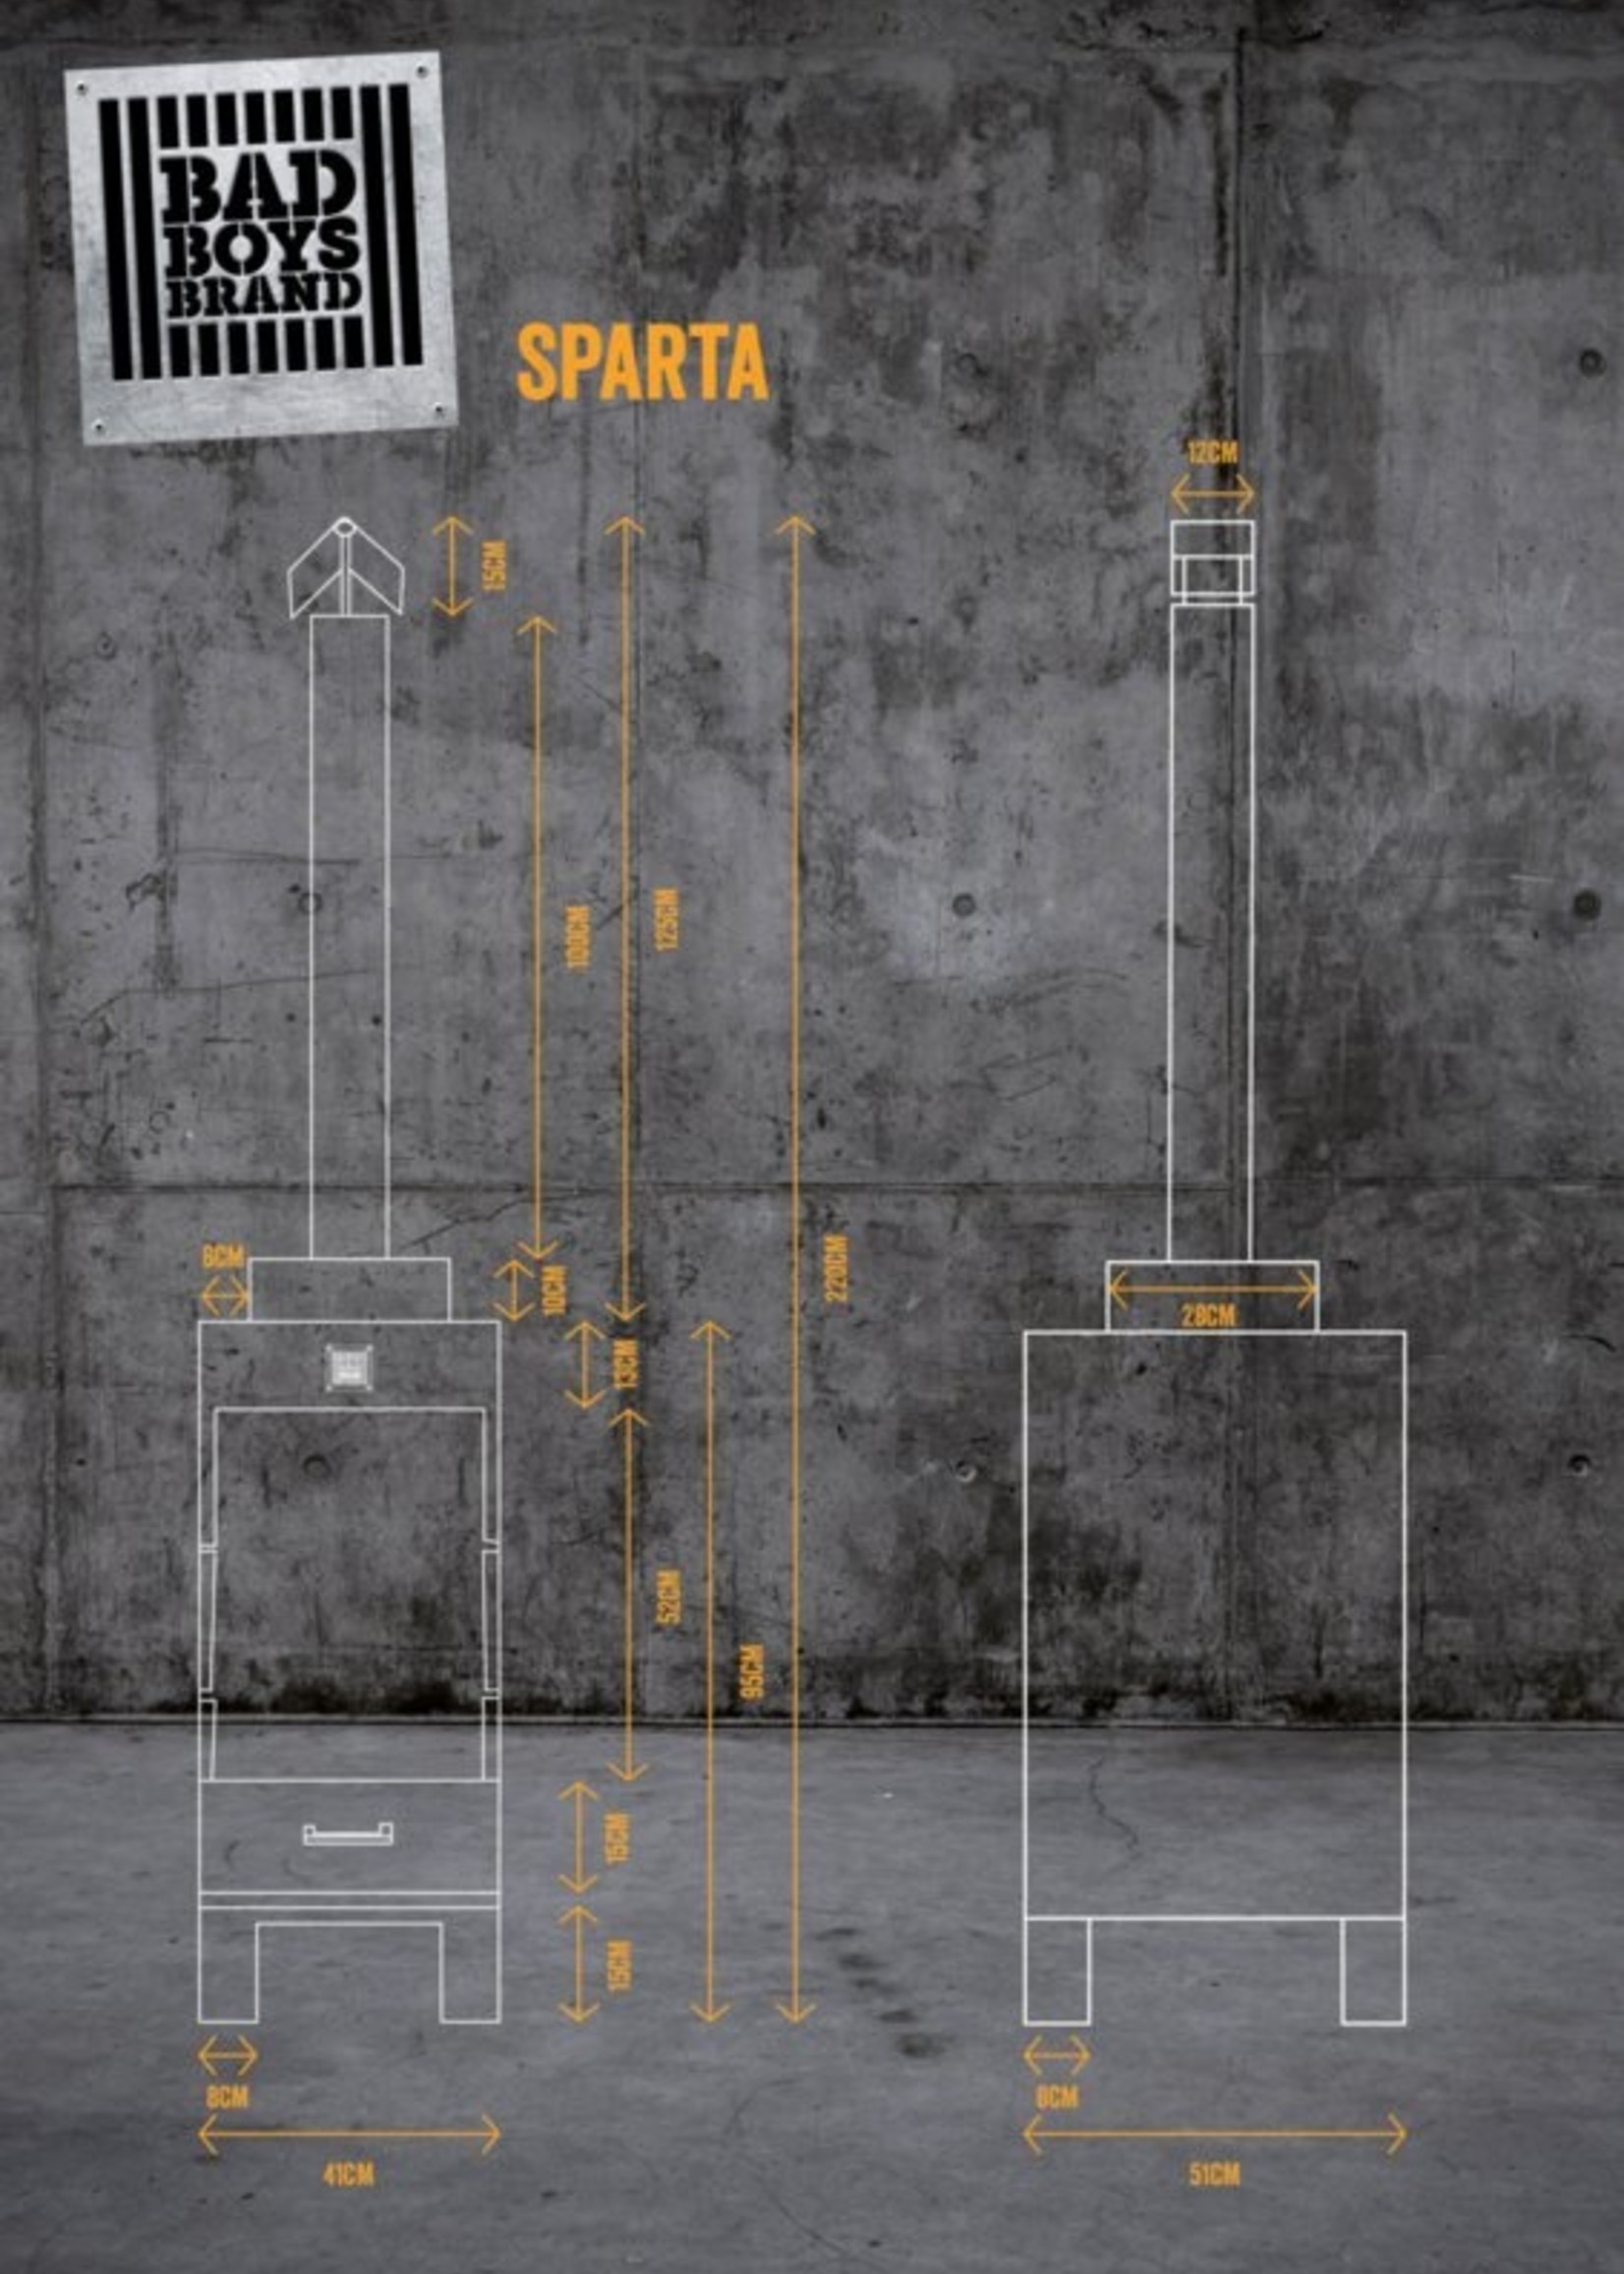 Bad Boys Brand Sparta - Gartenkamin 220 cm - BadBoys Fire - Stahl - 100% Made in Jail